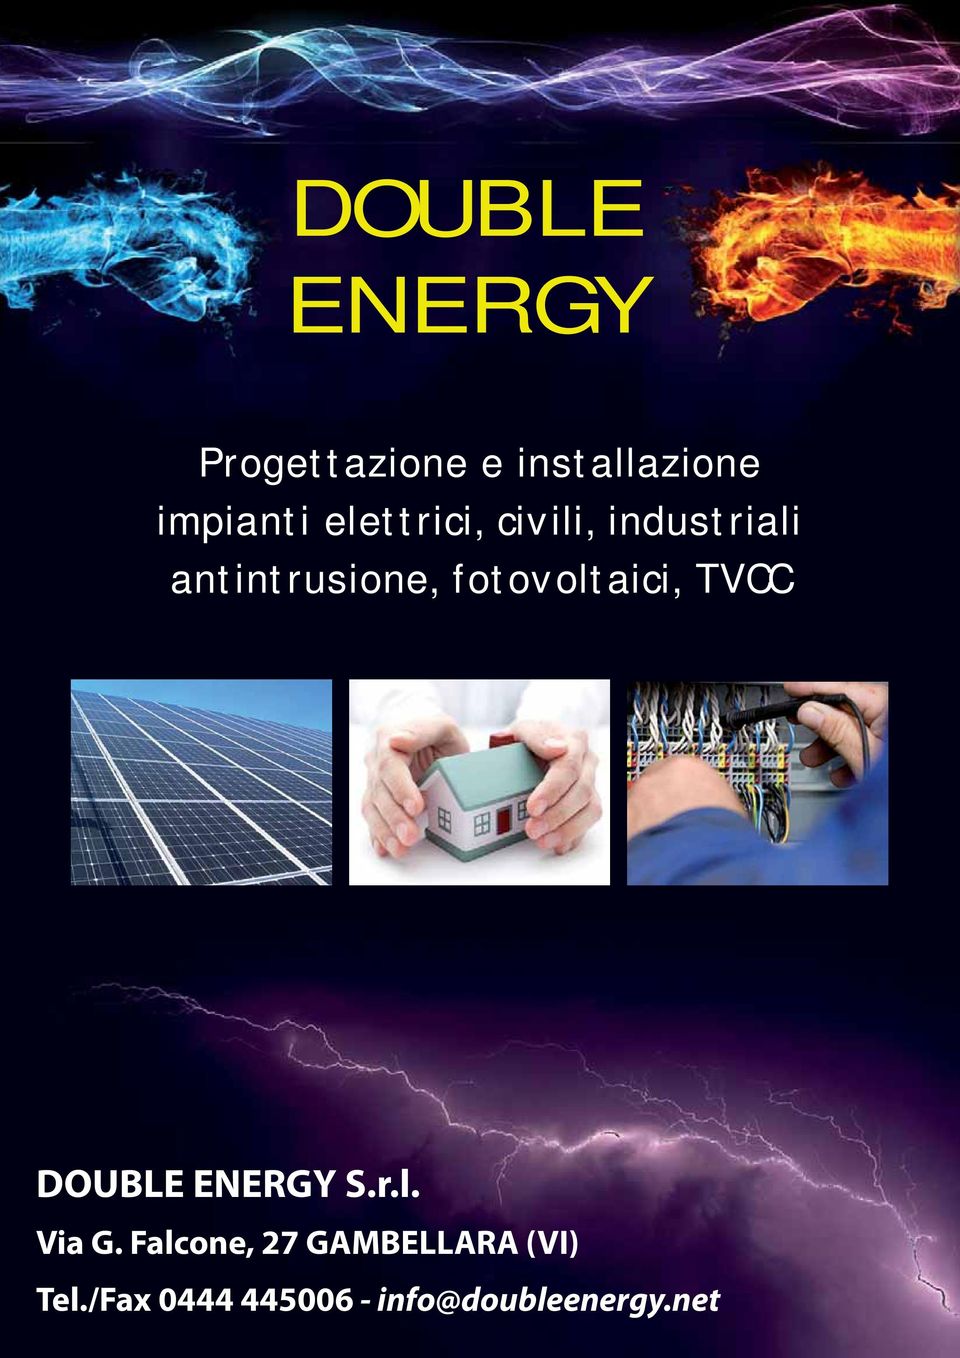 fotovoltaici, TVCC DOUBLE ENERGY S.r.l. Via G.